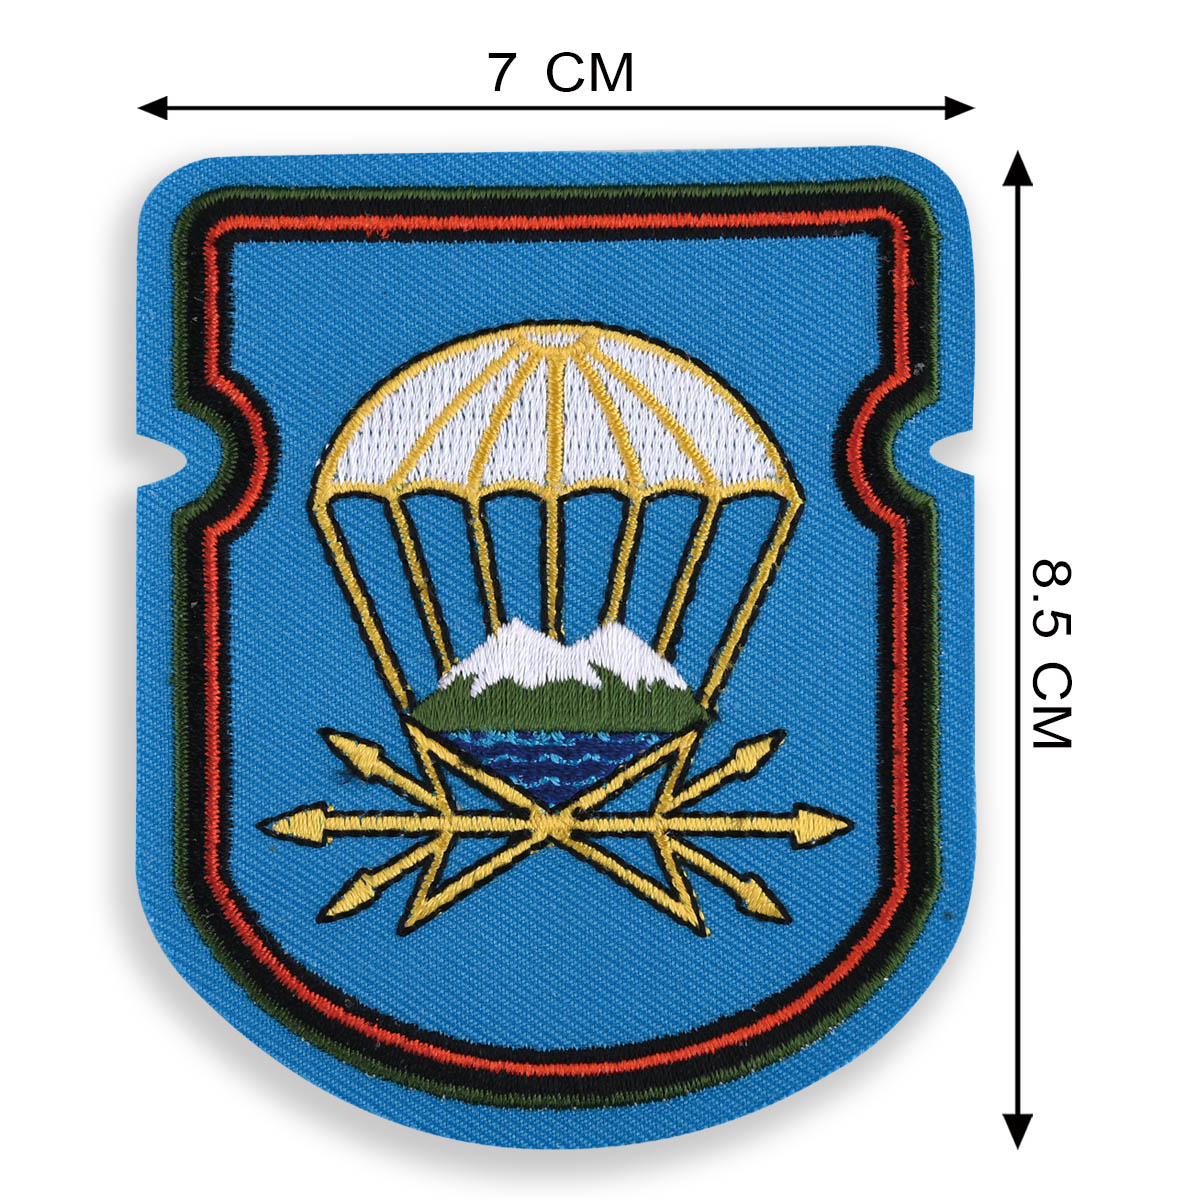 Нашивка-эмблема "743 отдельный батальон связи 7 ДШД" 